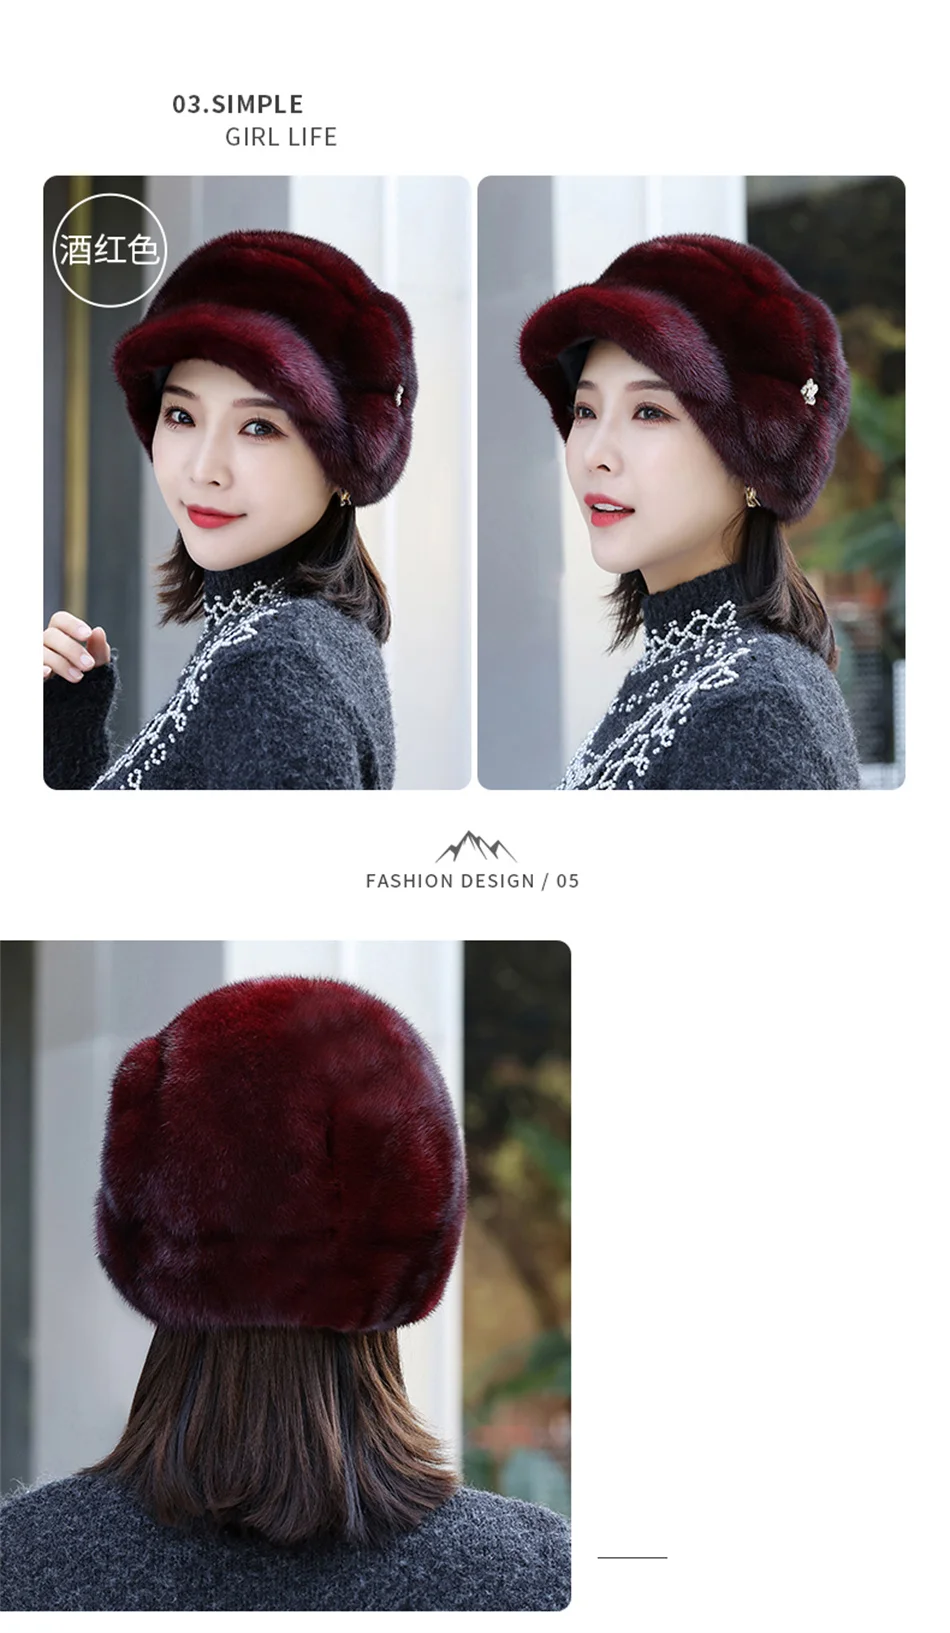 2022 Winter Hat Women Russian Mink Fur Hat Women Outdoor Winter Hat Earmuff Ski Cap Keep Warm Ladies Fur Hat Free Shipping